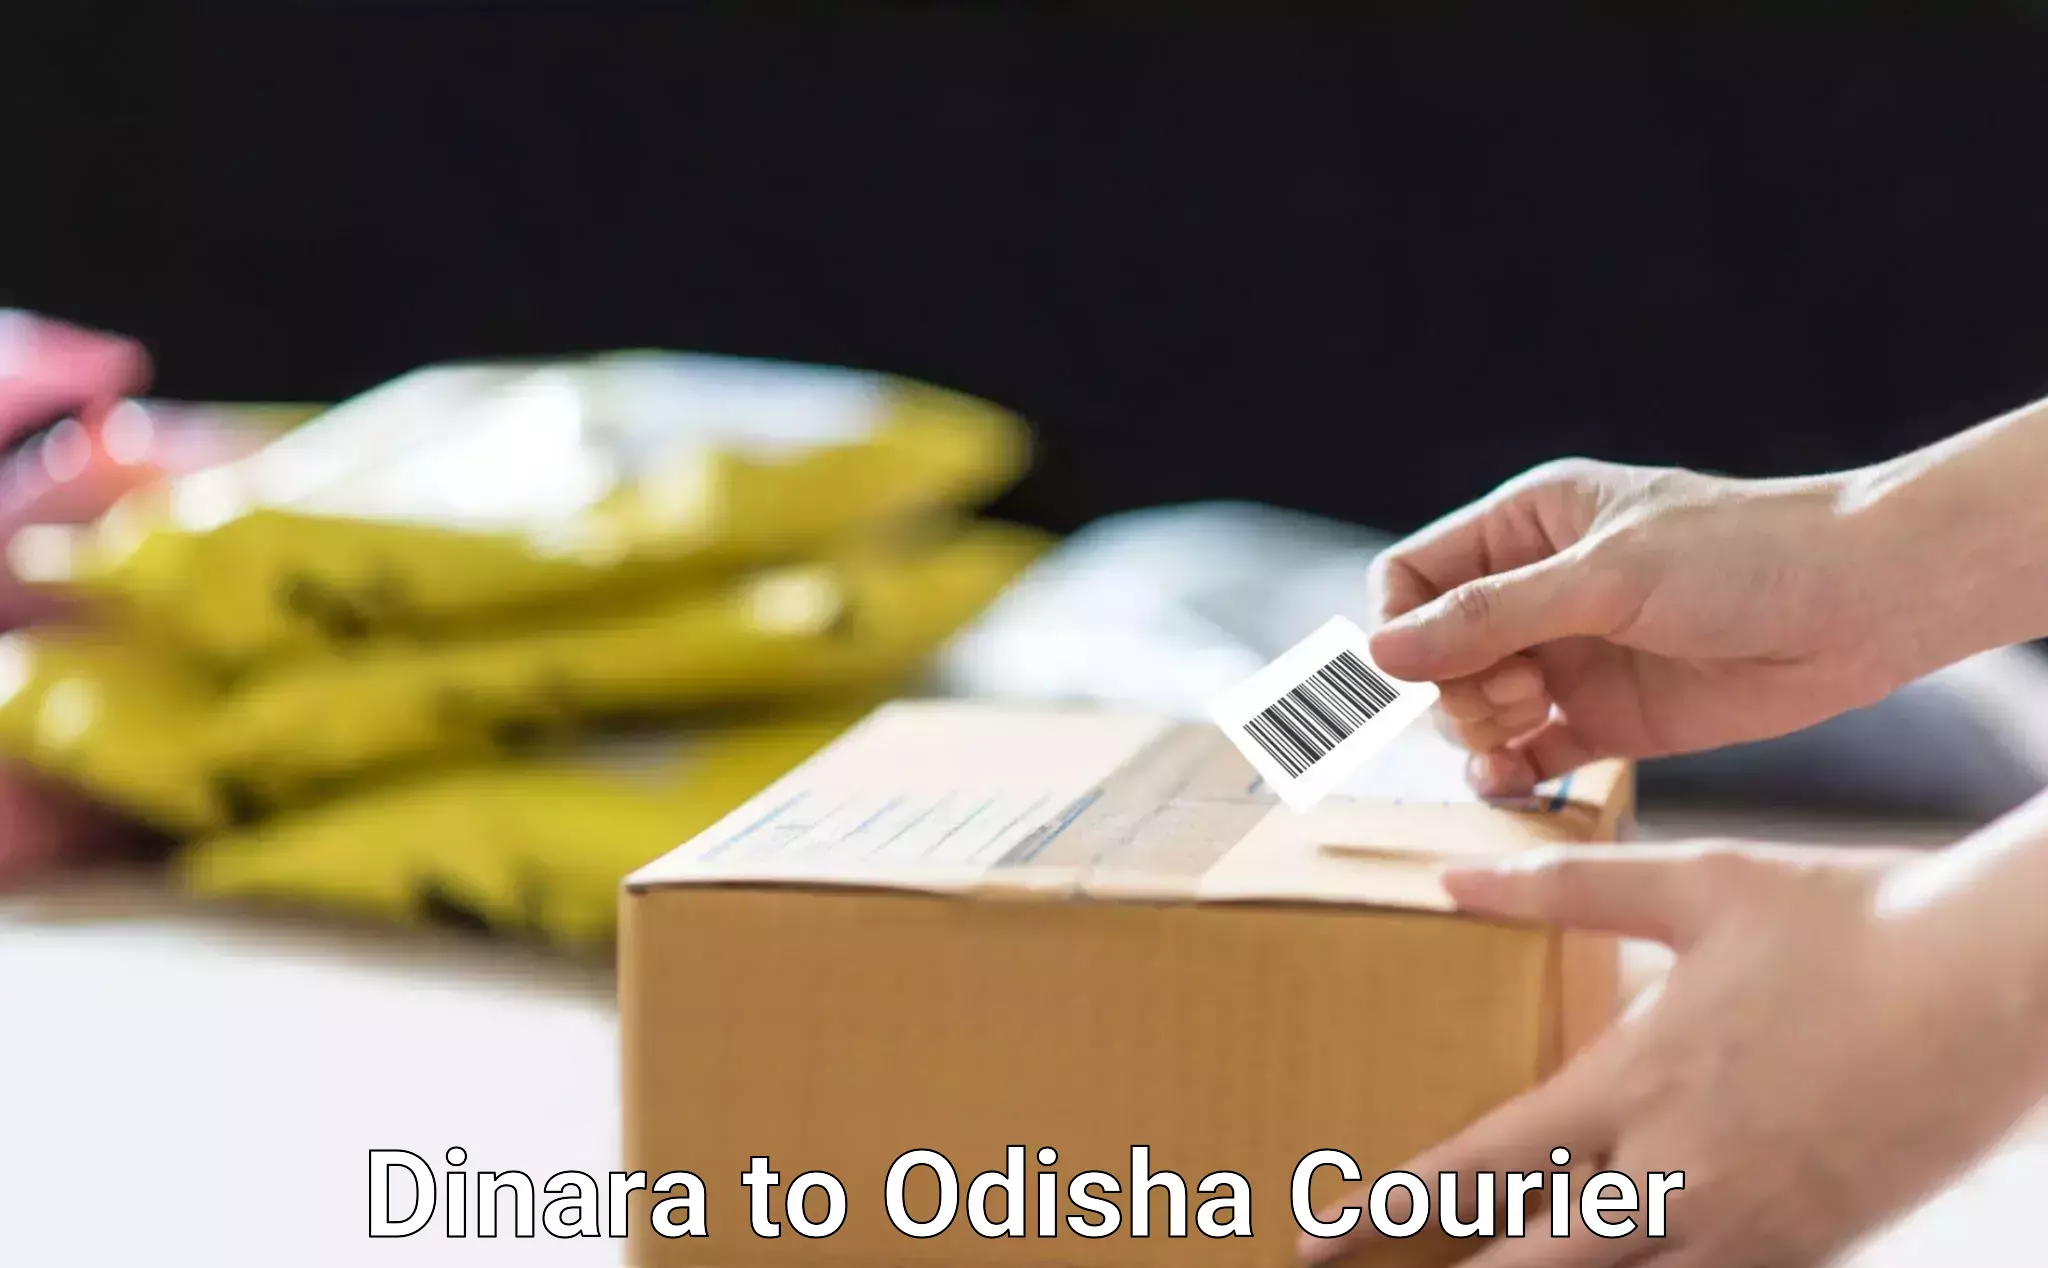 Professional moving company Dinara to Kodala